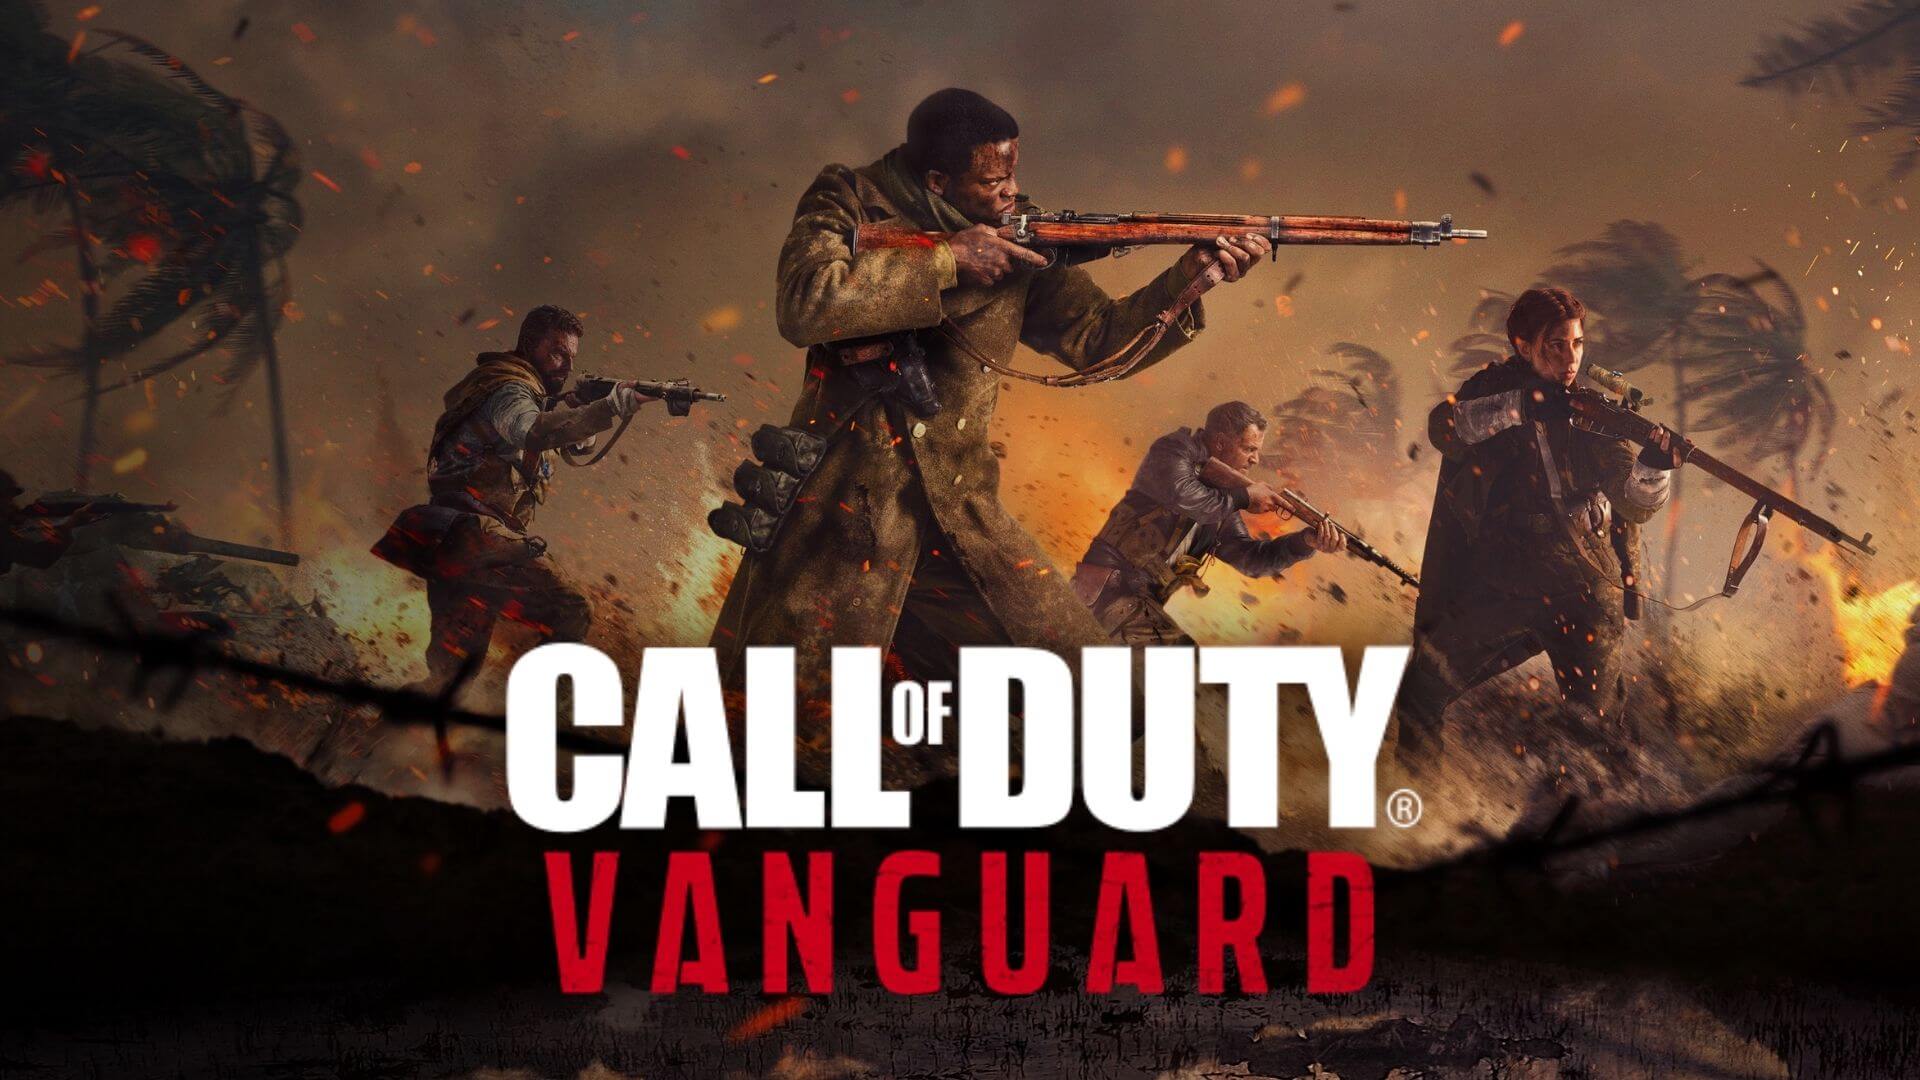 Сравнение графики Call of Duty Vanguard на Xbox Series X | S и Playstation 5